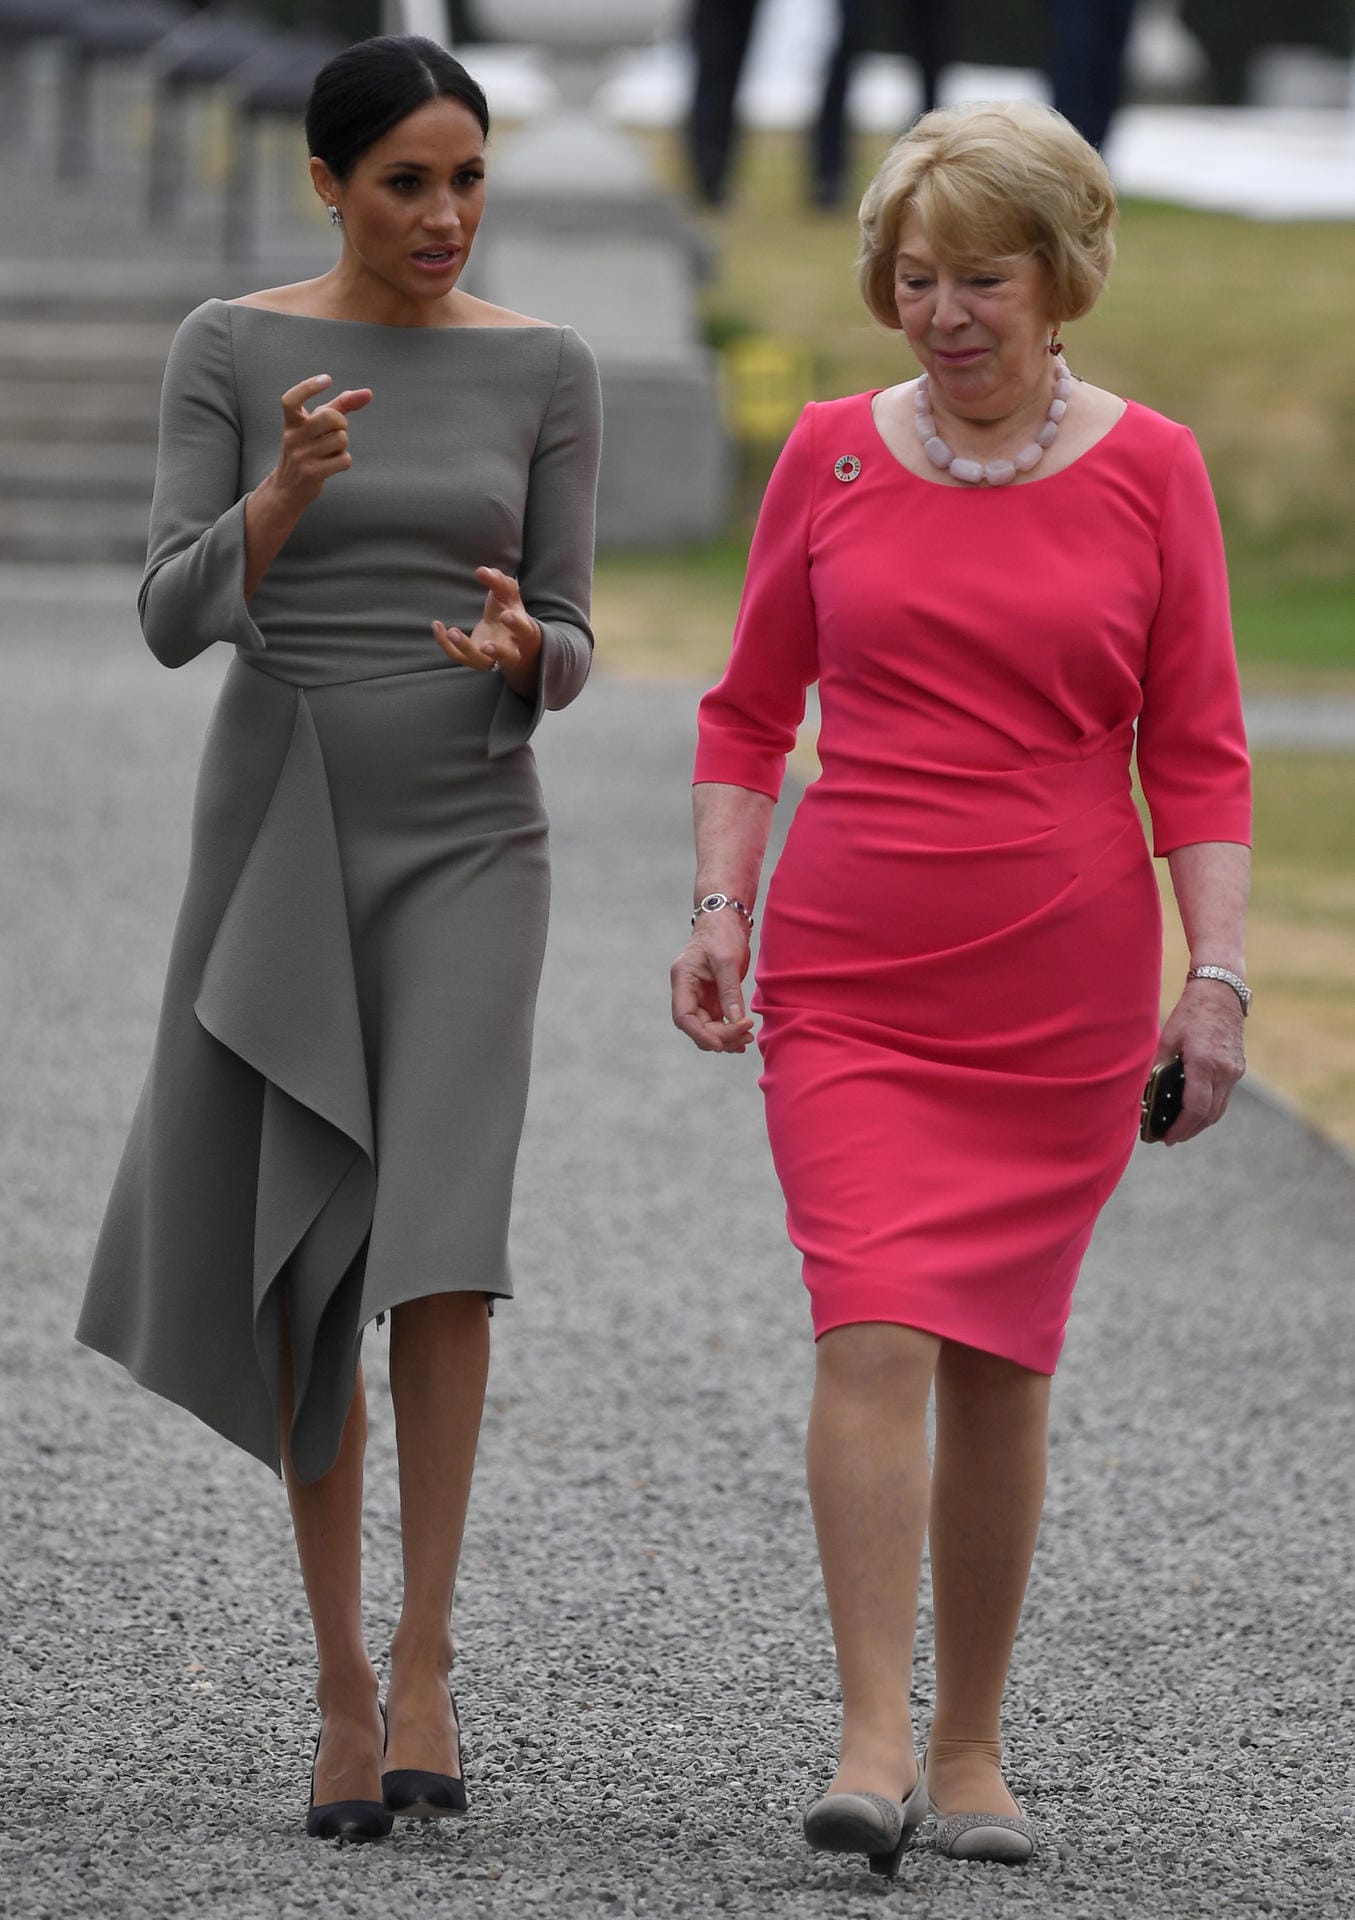 Irlandbesuch im Juli 2018: Meghan im schlichten Kleid mit Hinguckerdetail. Hier im Gespräch mit Sabina Coyne, der Ehefrau des irischen Präsidenten Michael Higgins.